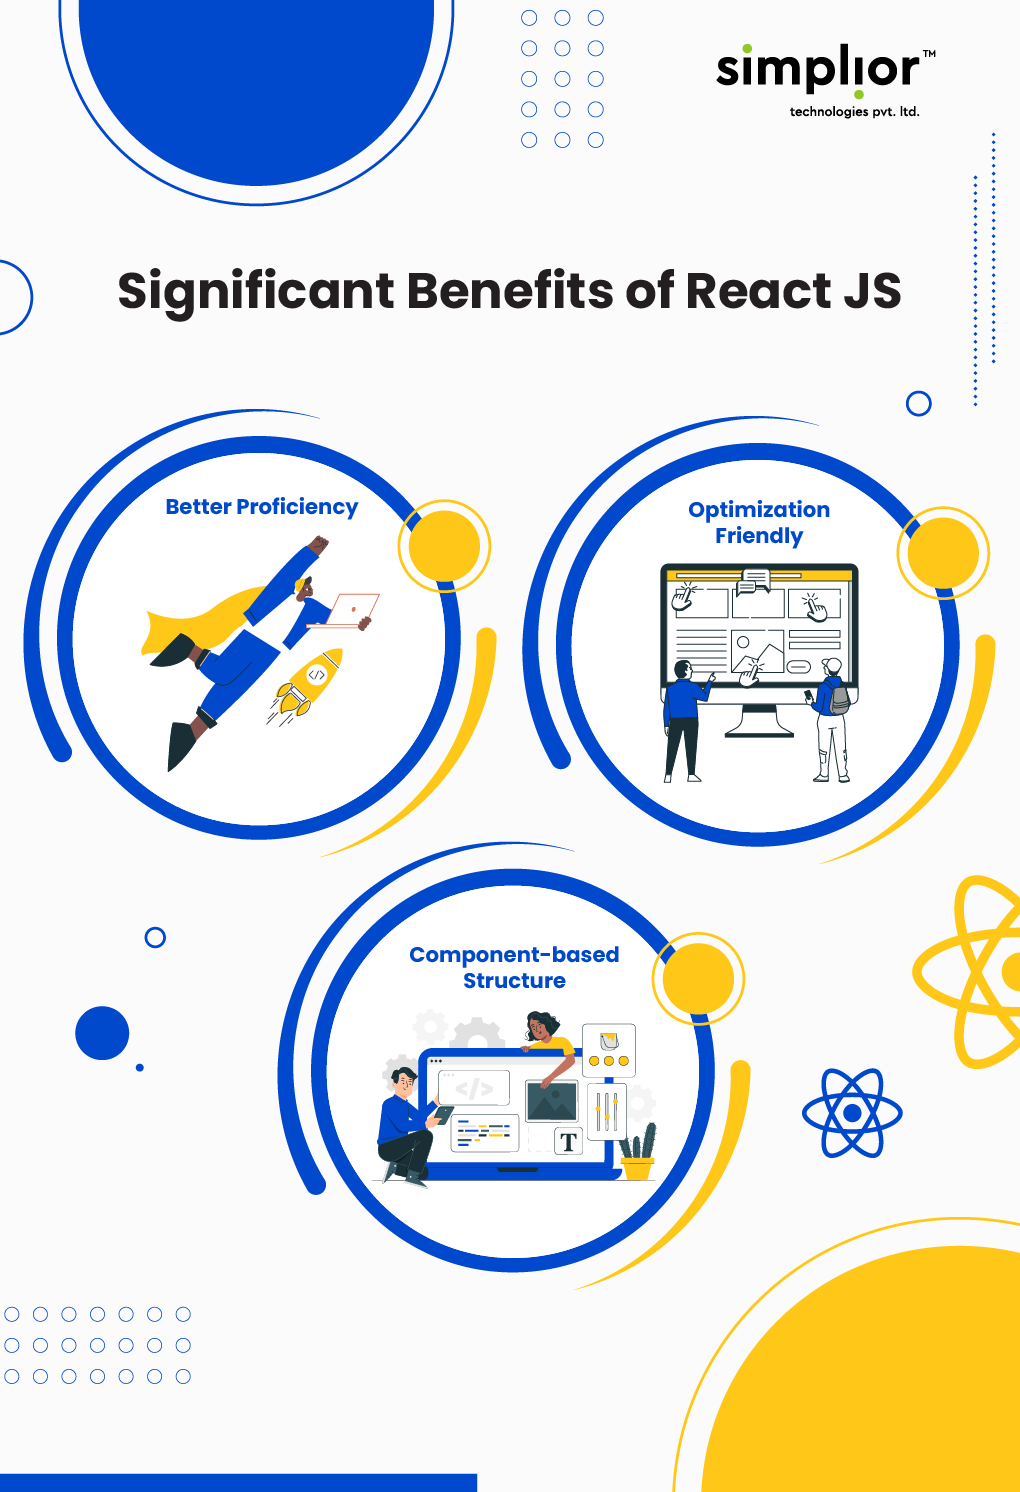 Significant Benefits of ReactJS - Simplior